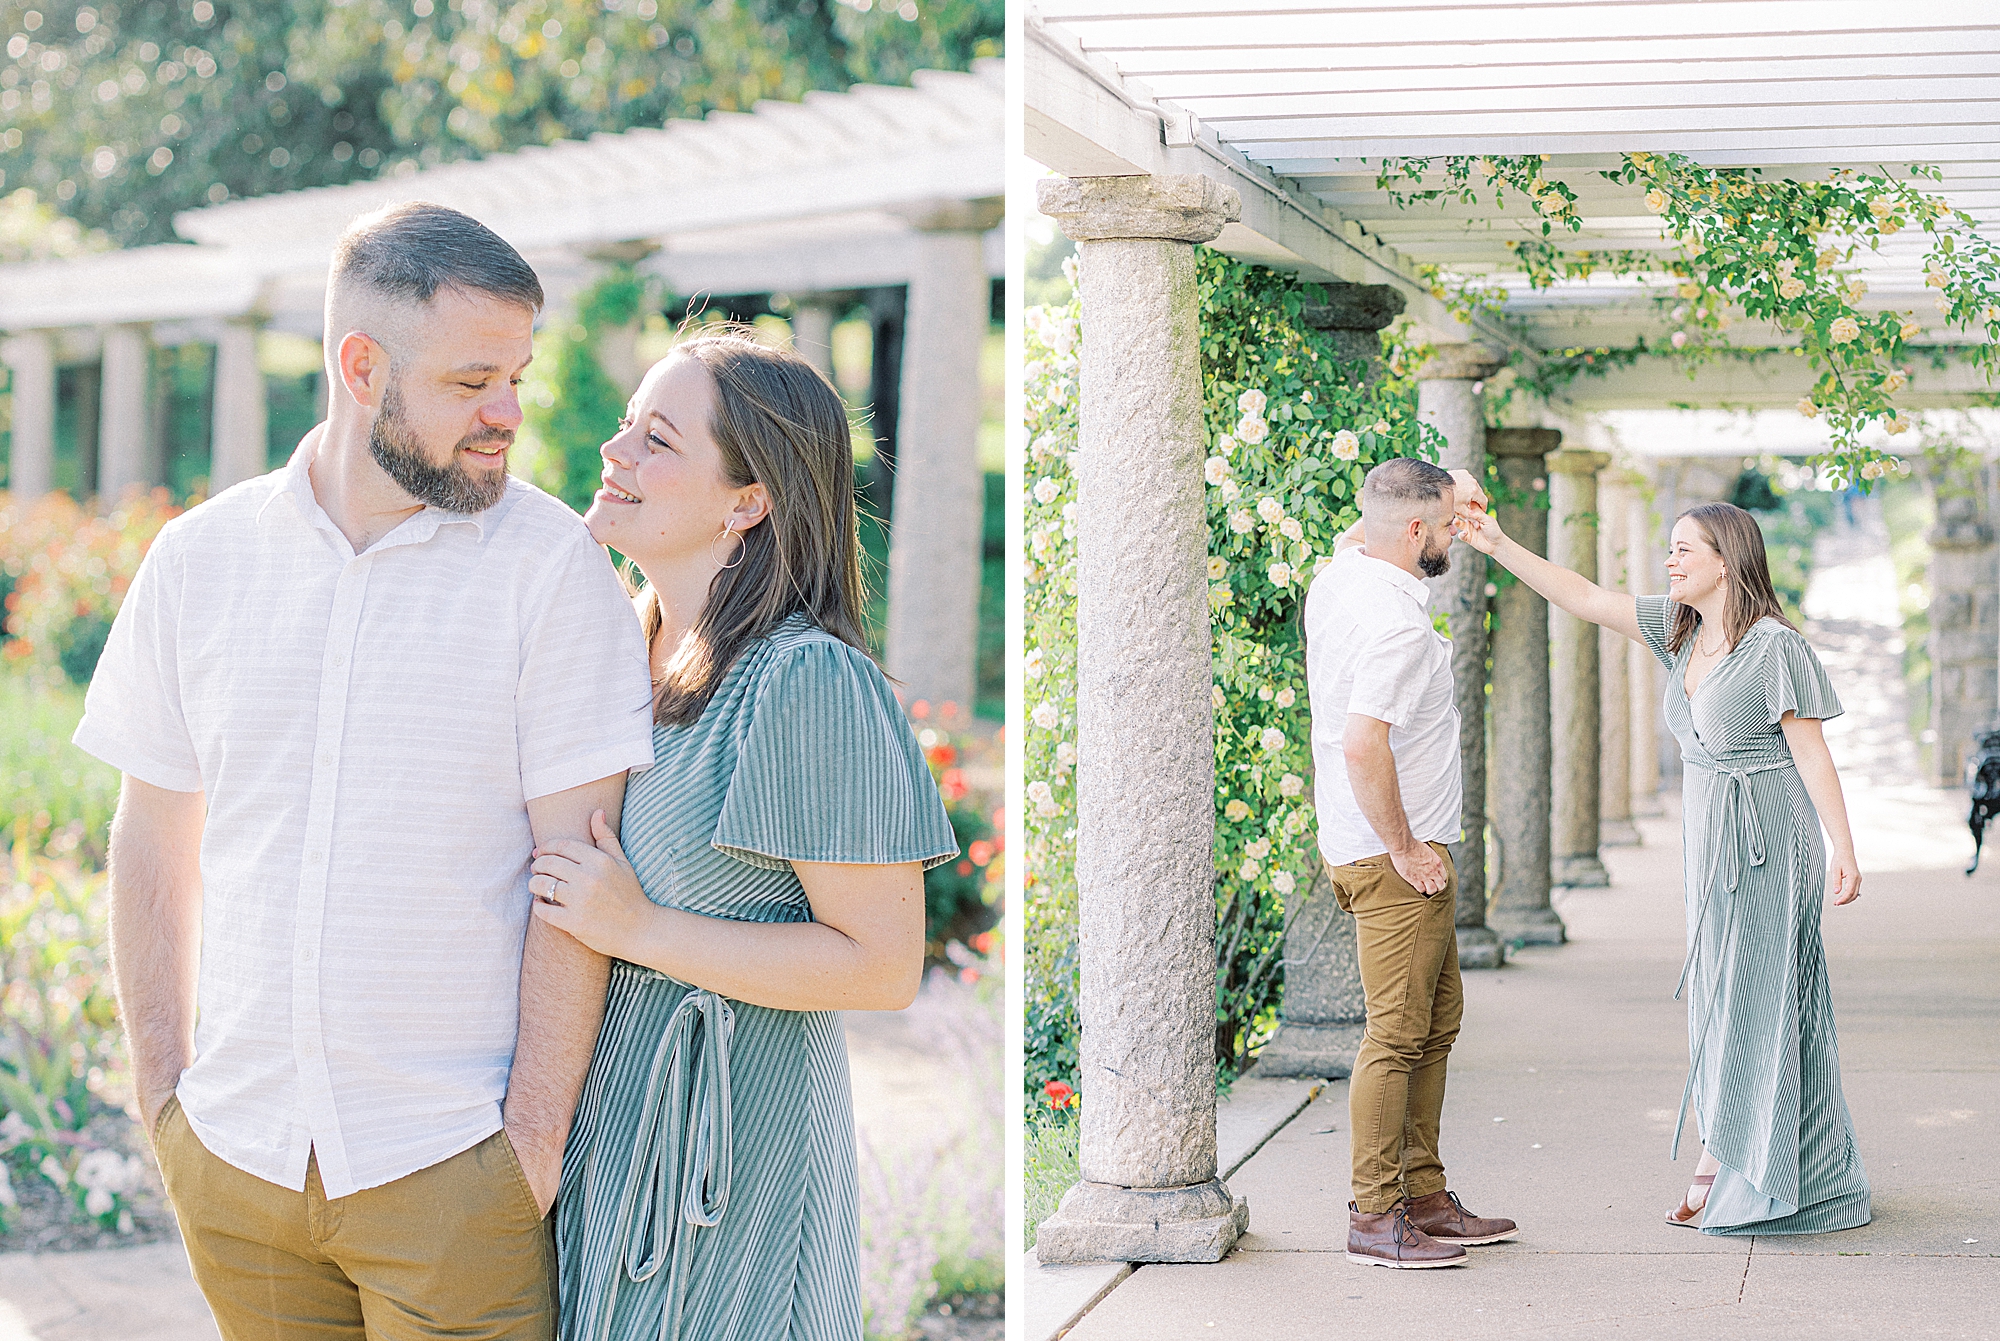 Richmond wedding photographer captures couple’s engagement portraits at Maymont Park.